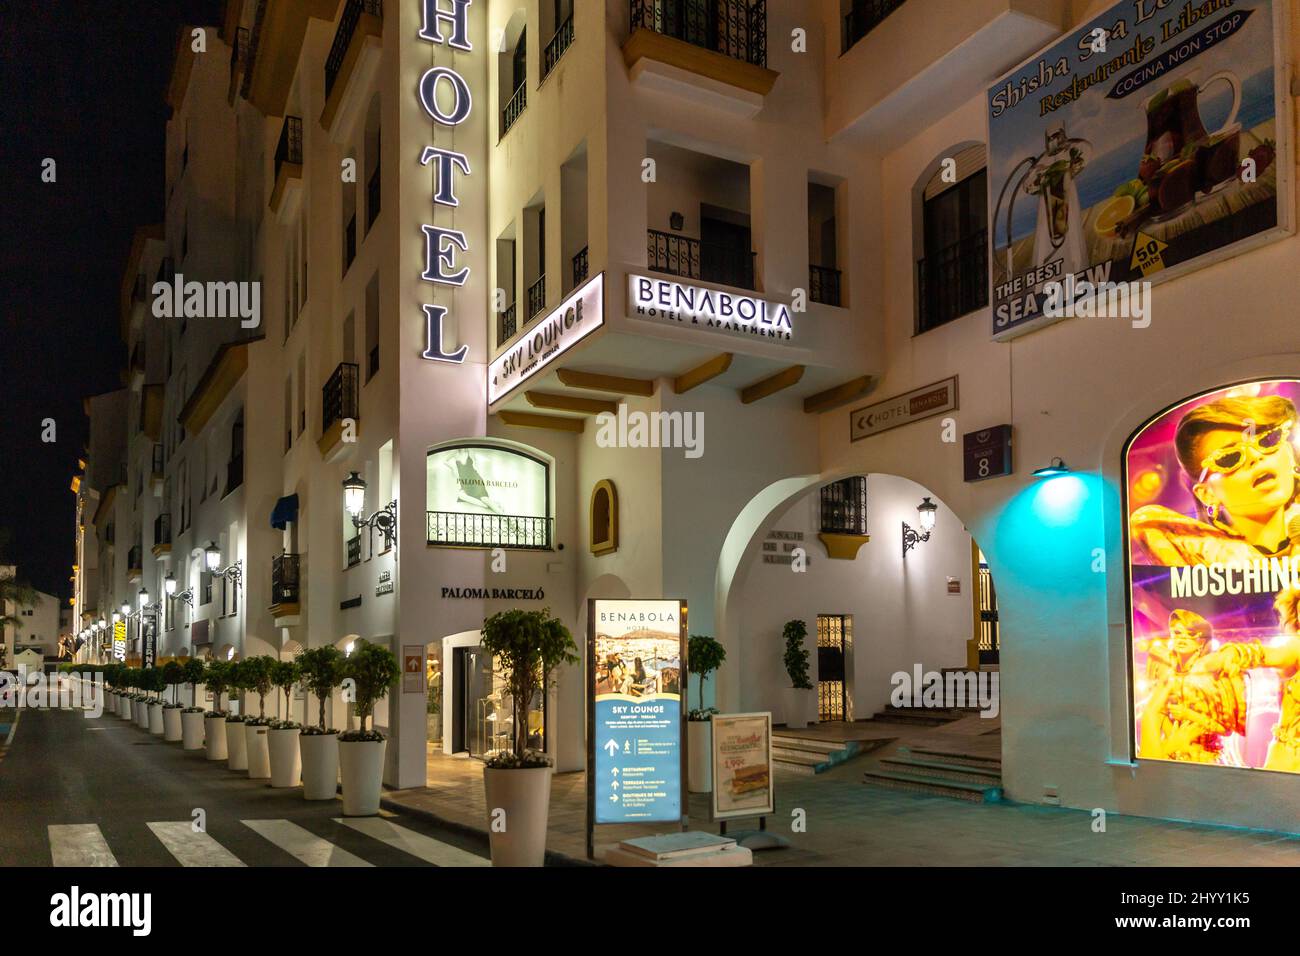 Belles rues de Puerto Banus la nuit. Hôtel Benabola avec magasin Moschino. Photographie de nuit dans le quartier le plus cher et le plus luxueux de Marbella Banque D'Images